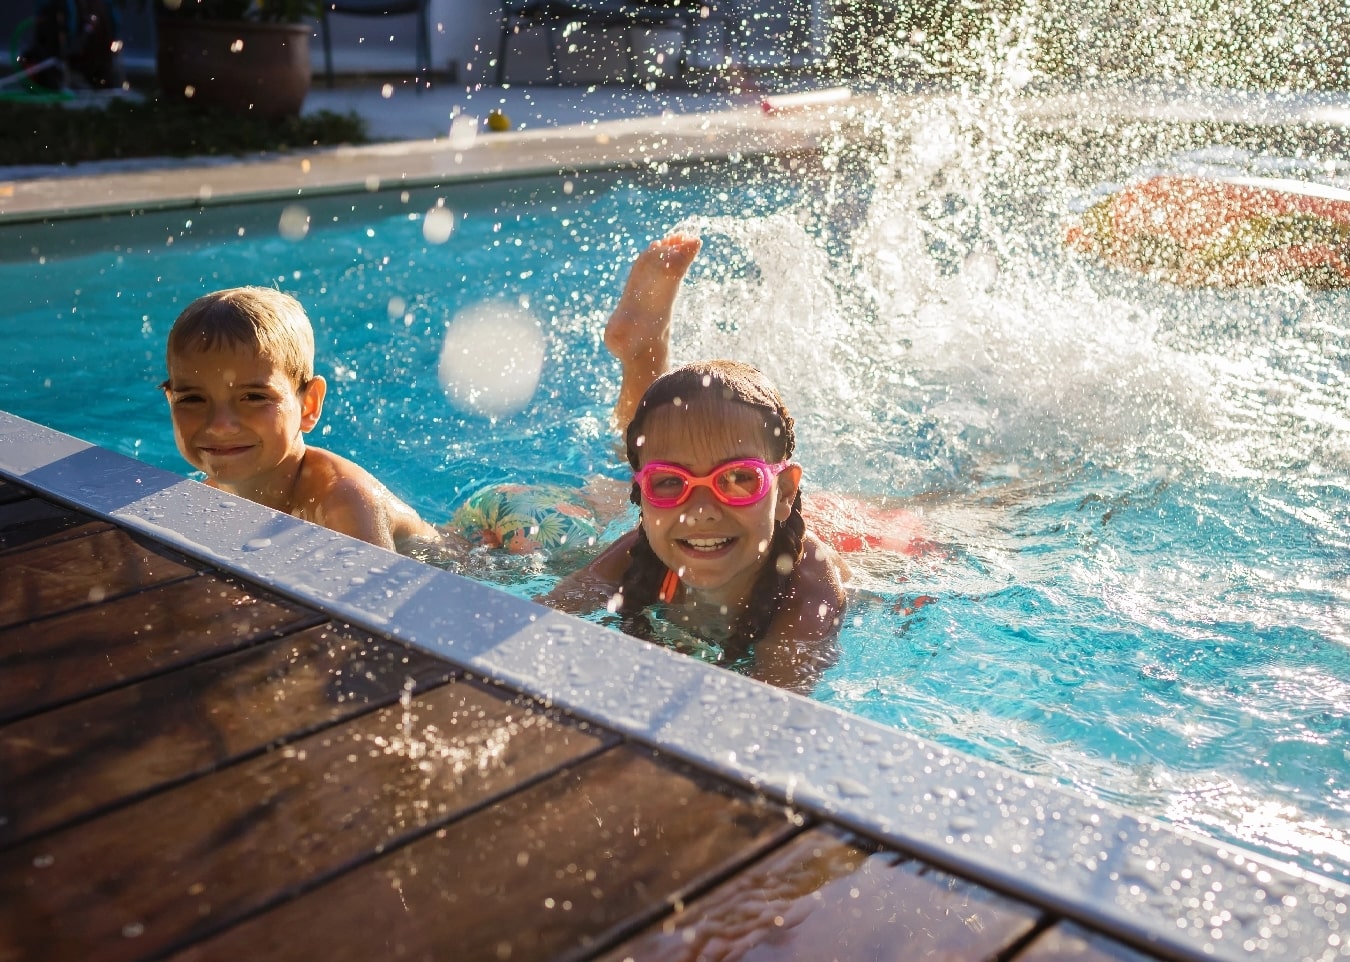 Kids splashing in the backyard pool